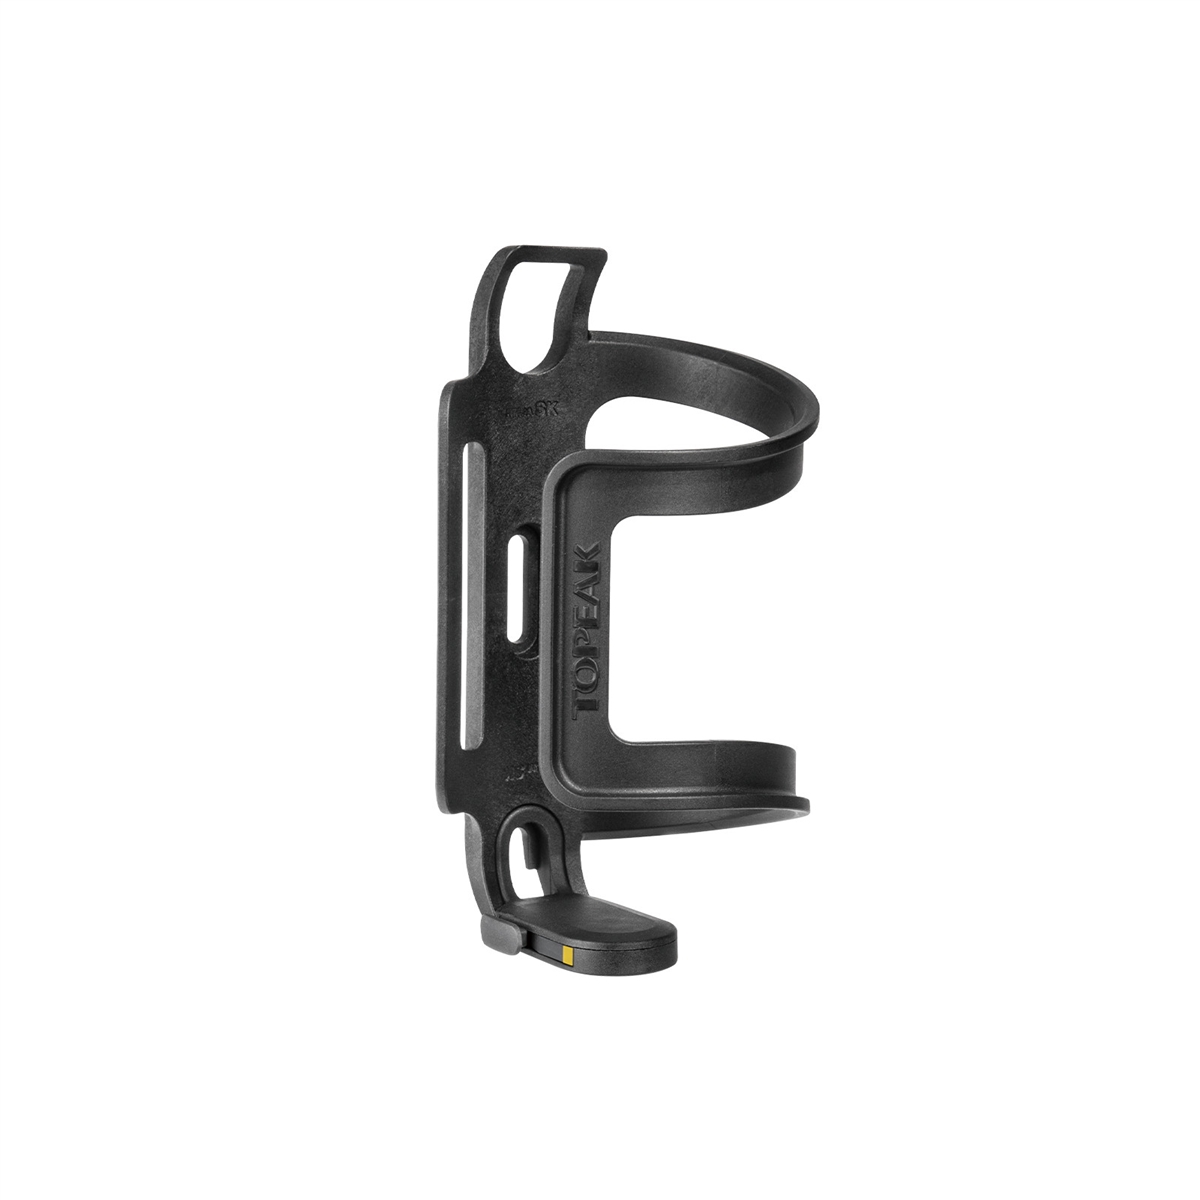 Portabidón de carga lateral Ninja Cage SK Montaje QuickLink Reversible Lado izquierdo/derecho